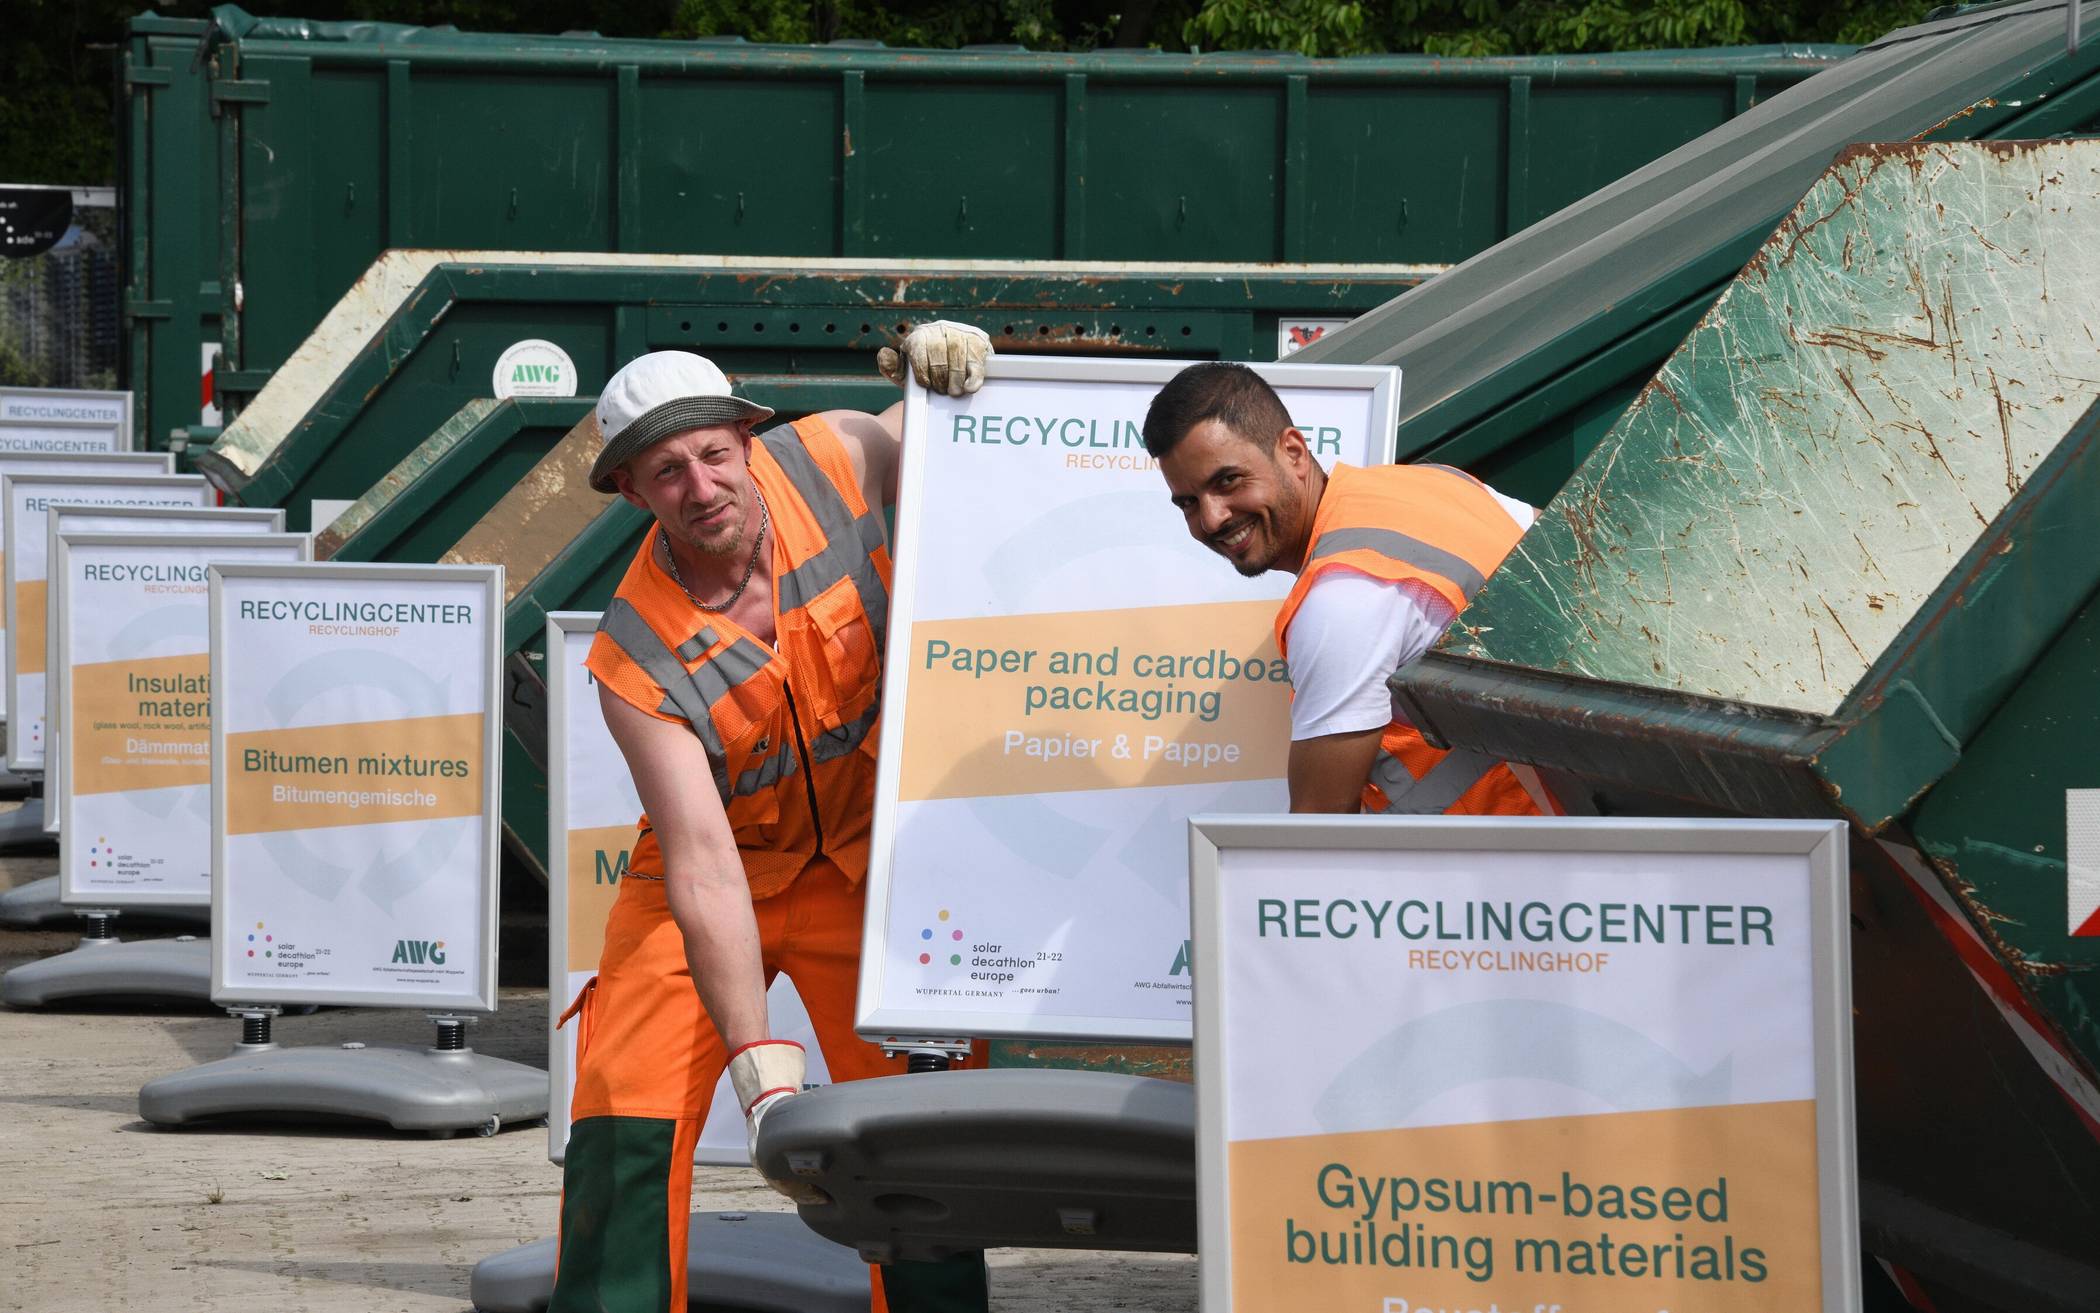 AWG-Recyclingcenter war eine „große Hilfe“